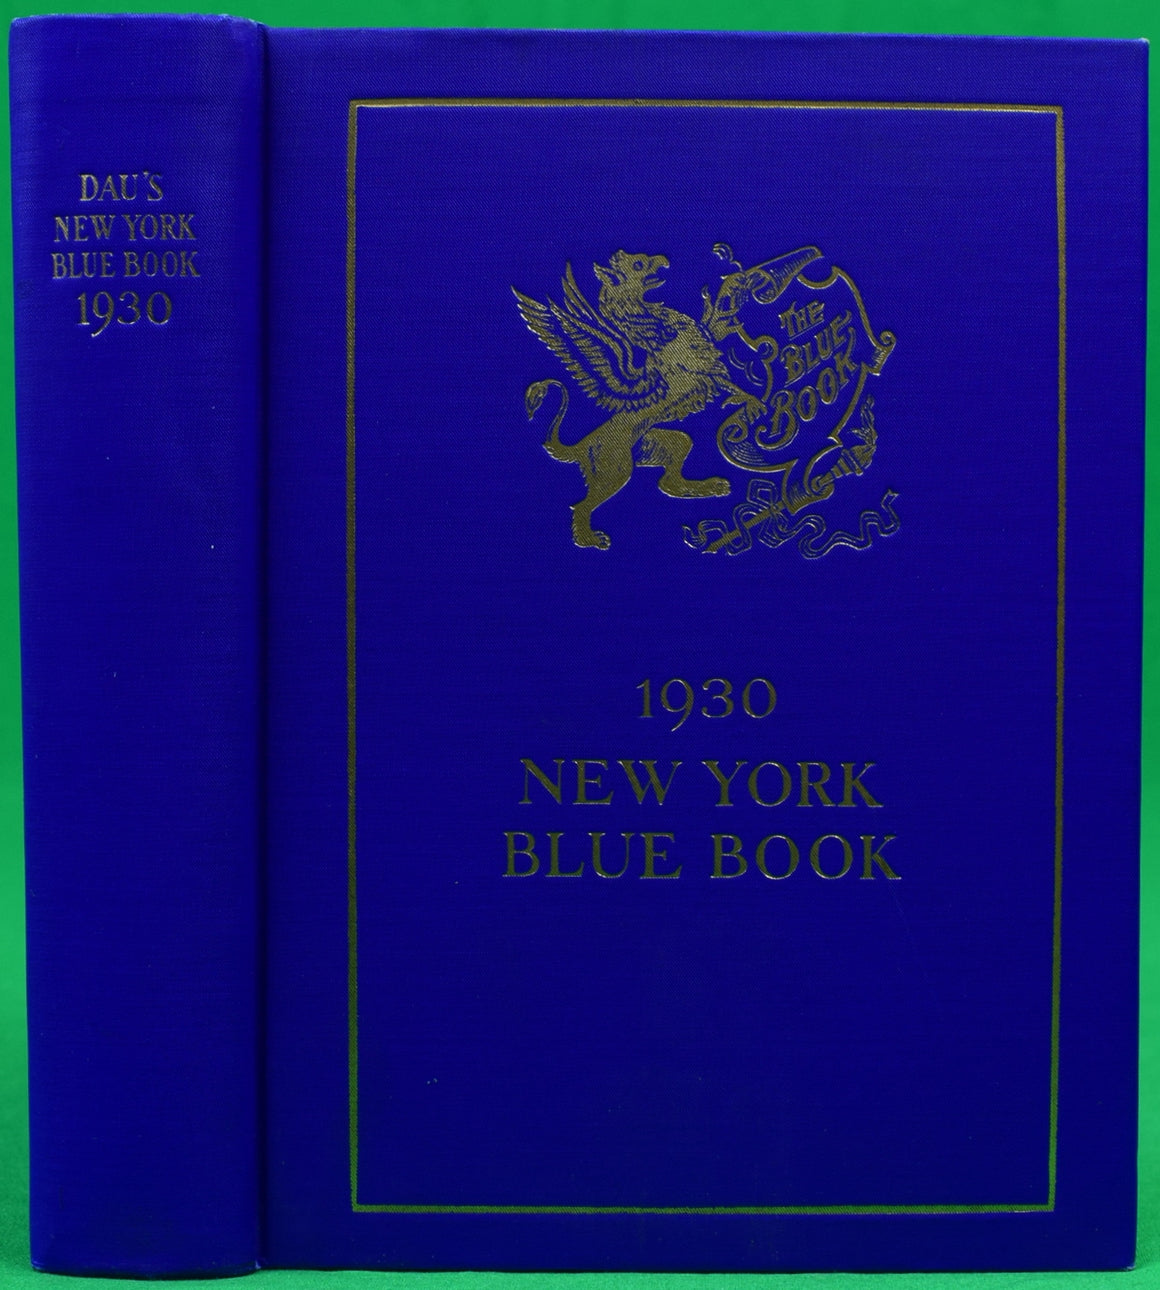 "Dau's New York Social Blue Book 1930" DAU, Frederick W.